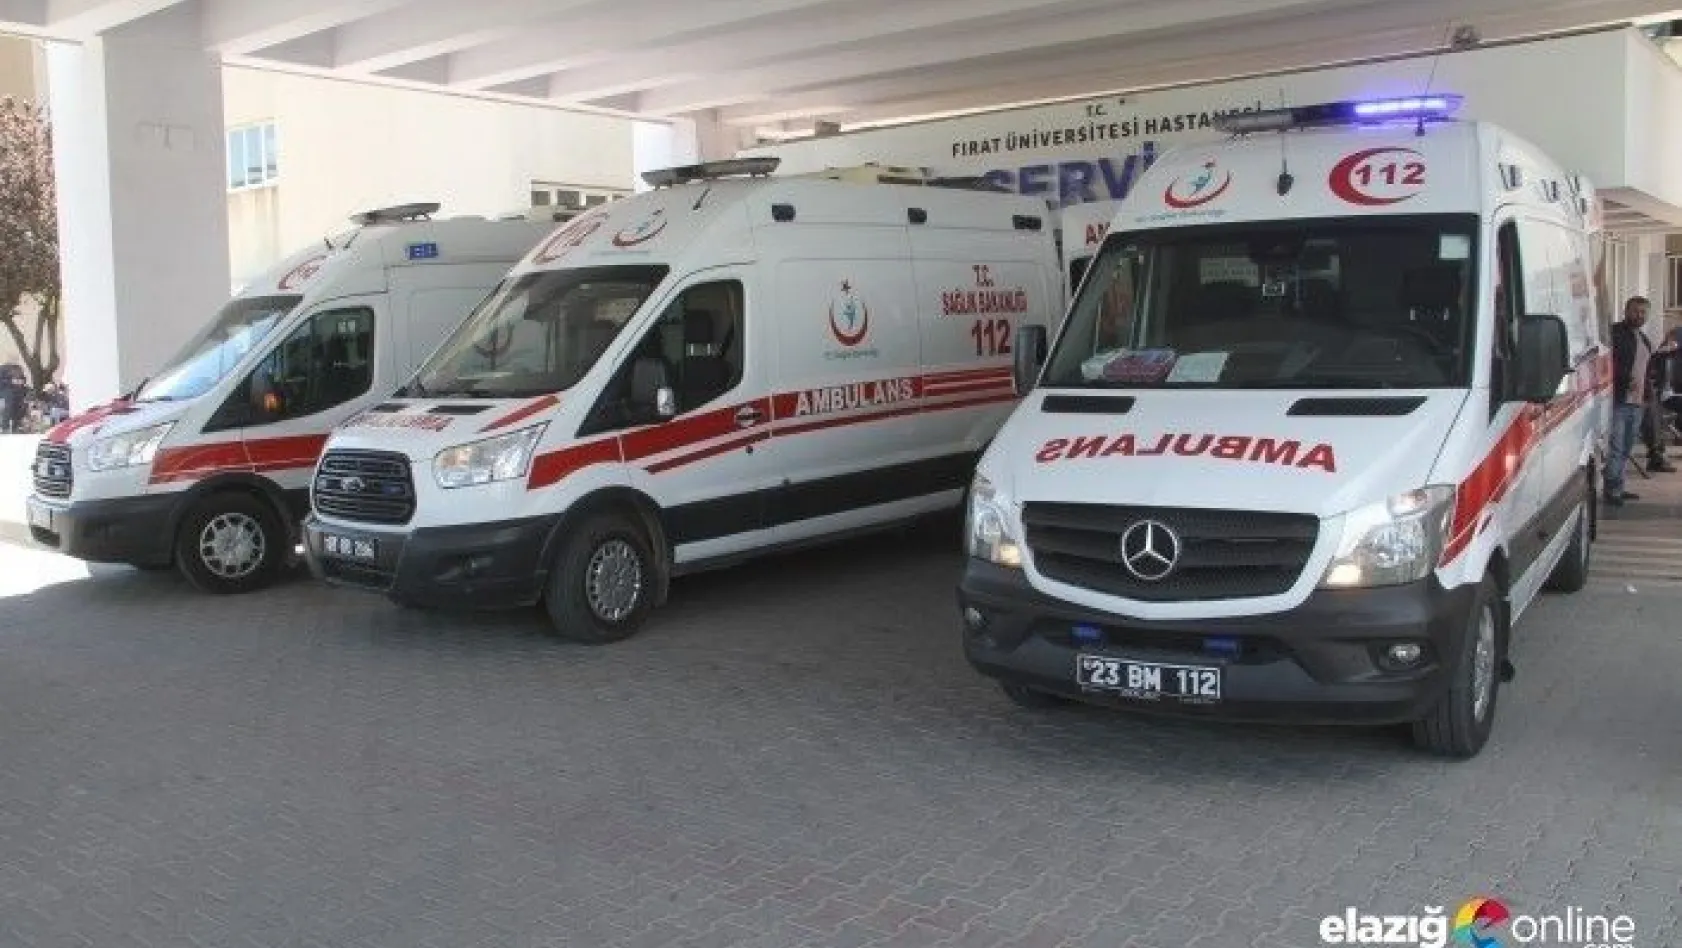 Tunceli'deki terör operasyonu, 3 yaralı Elazığ'a getirildi